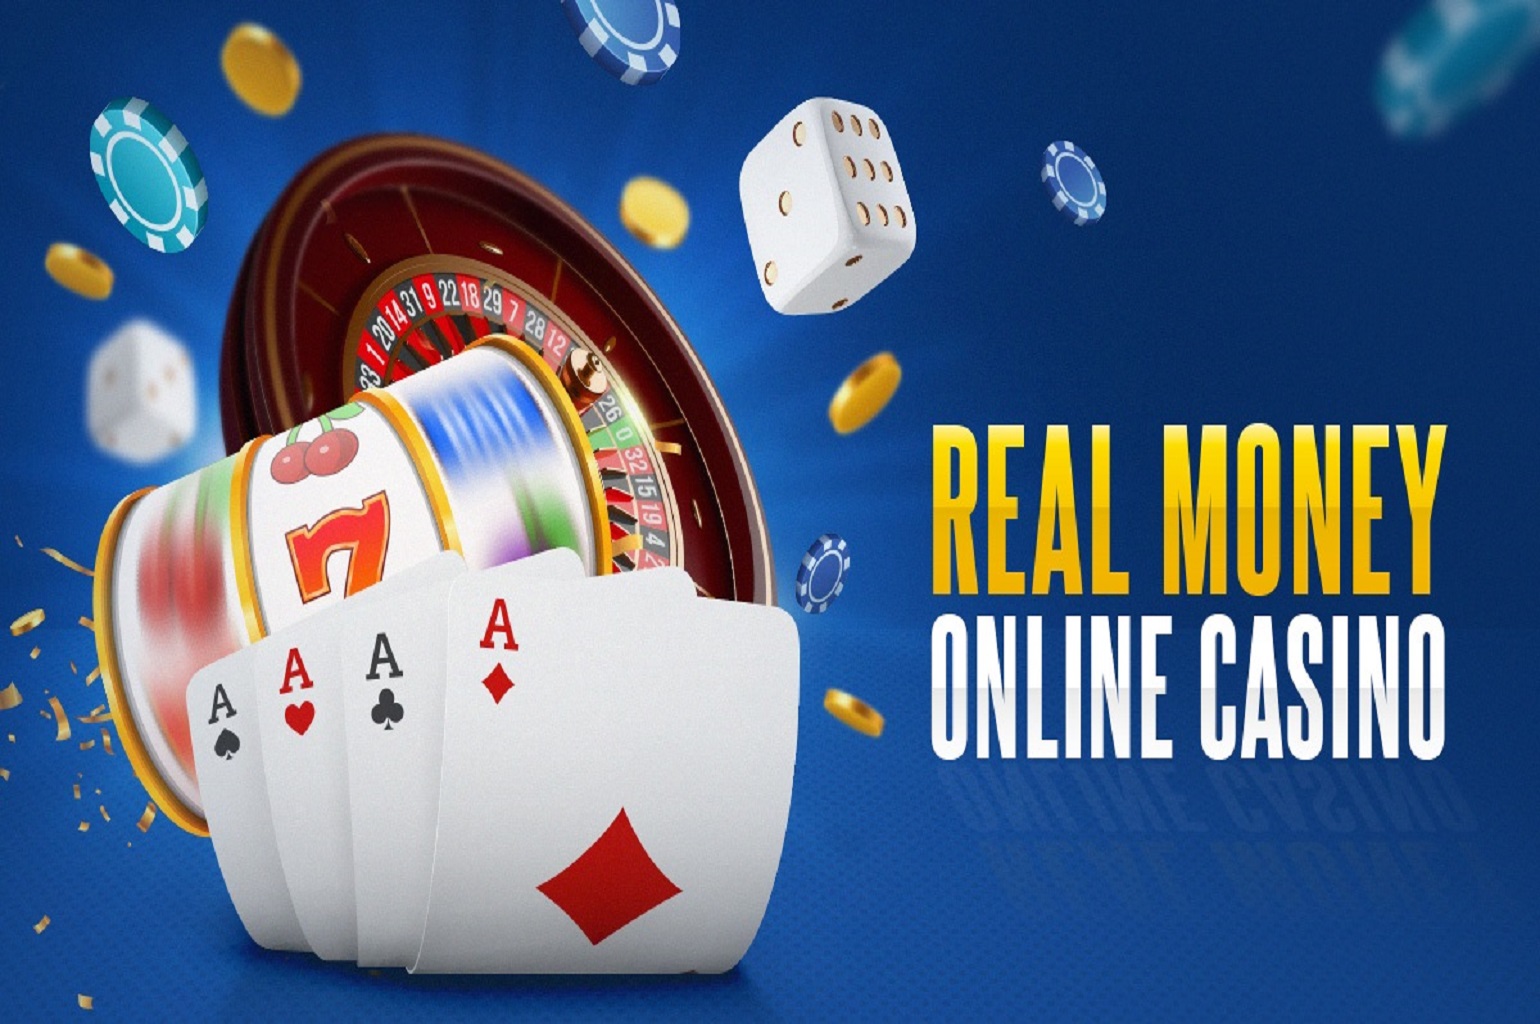 Play online casino for real money in смотреть как играть в майнкрафт с друзьями на карте